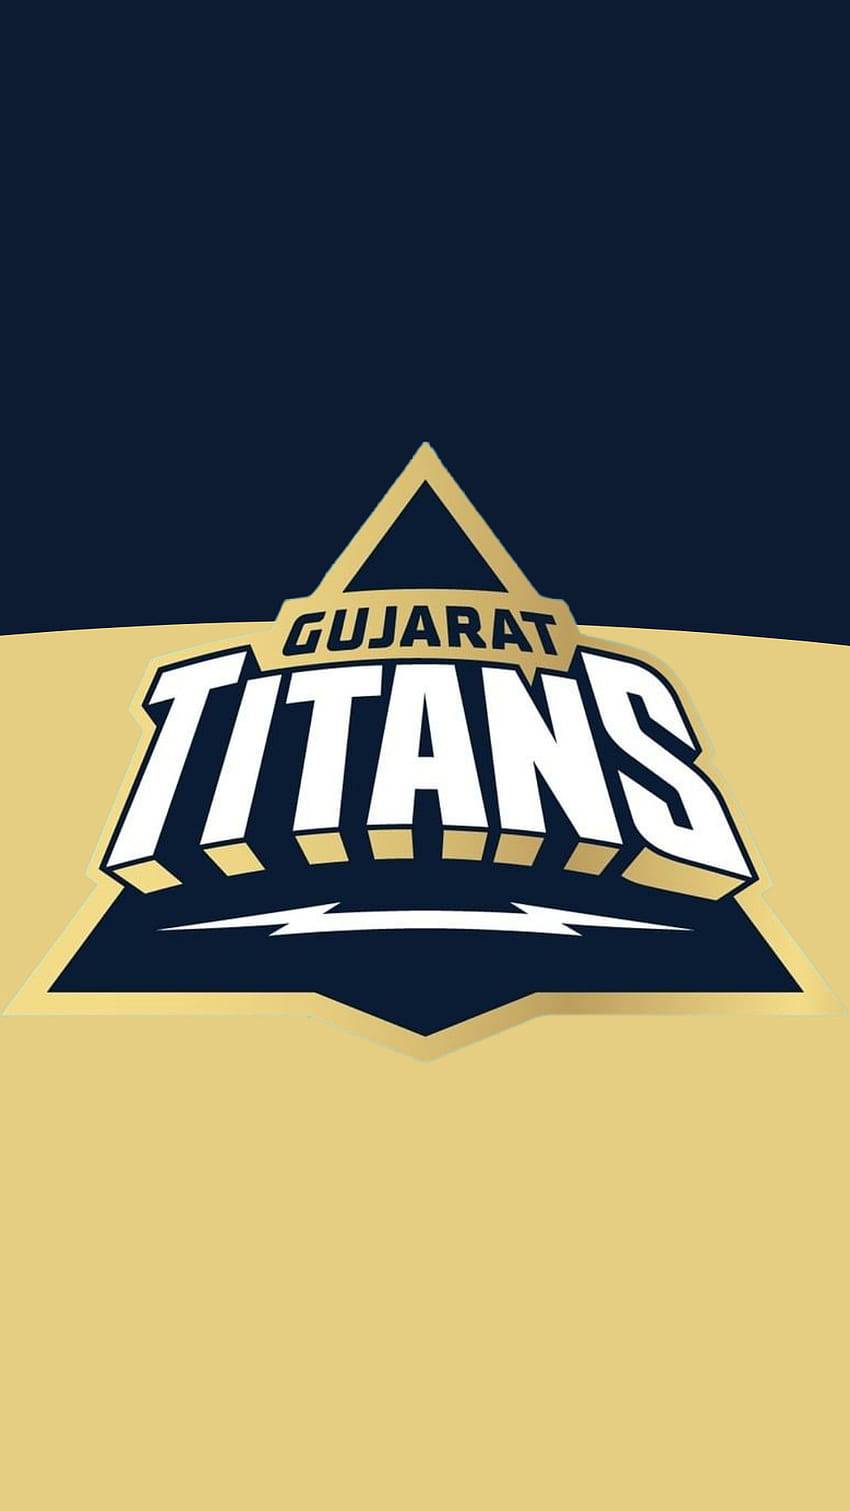 Gujarat Titans, ipl, sports, cricket HD phone wallpaper